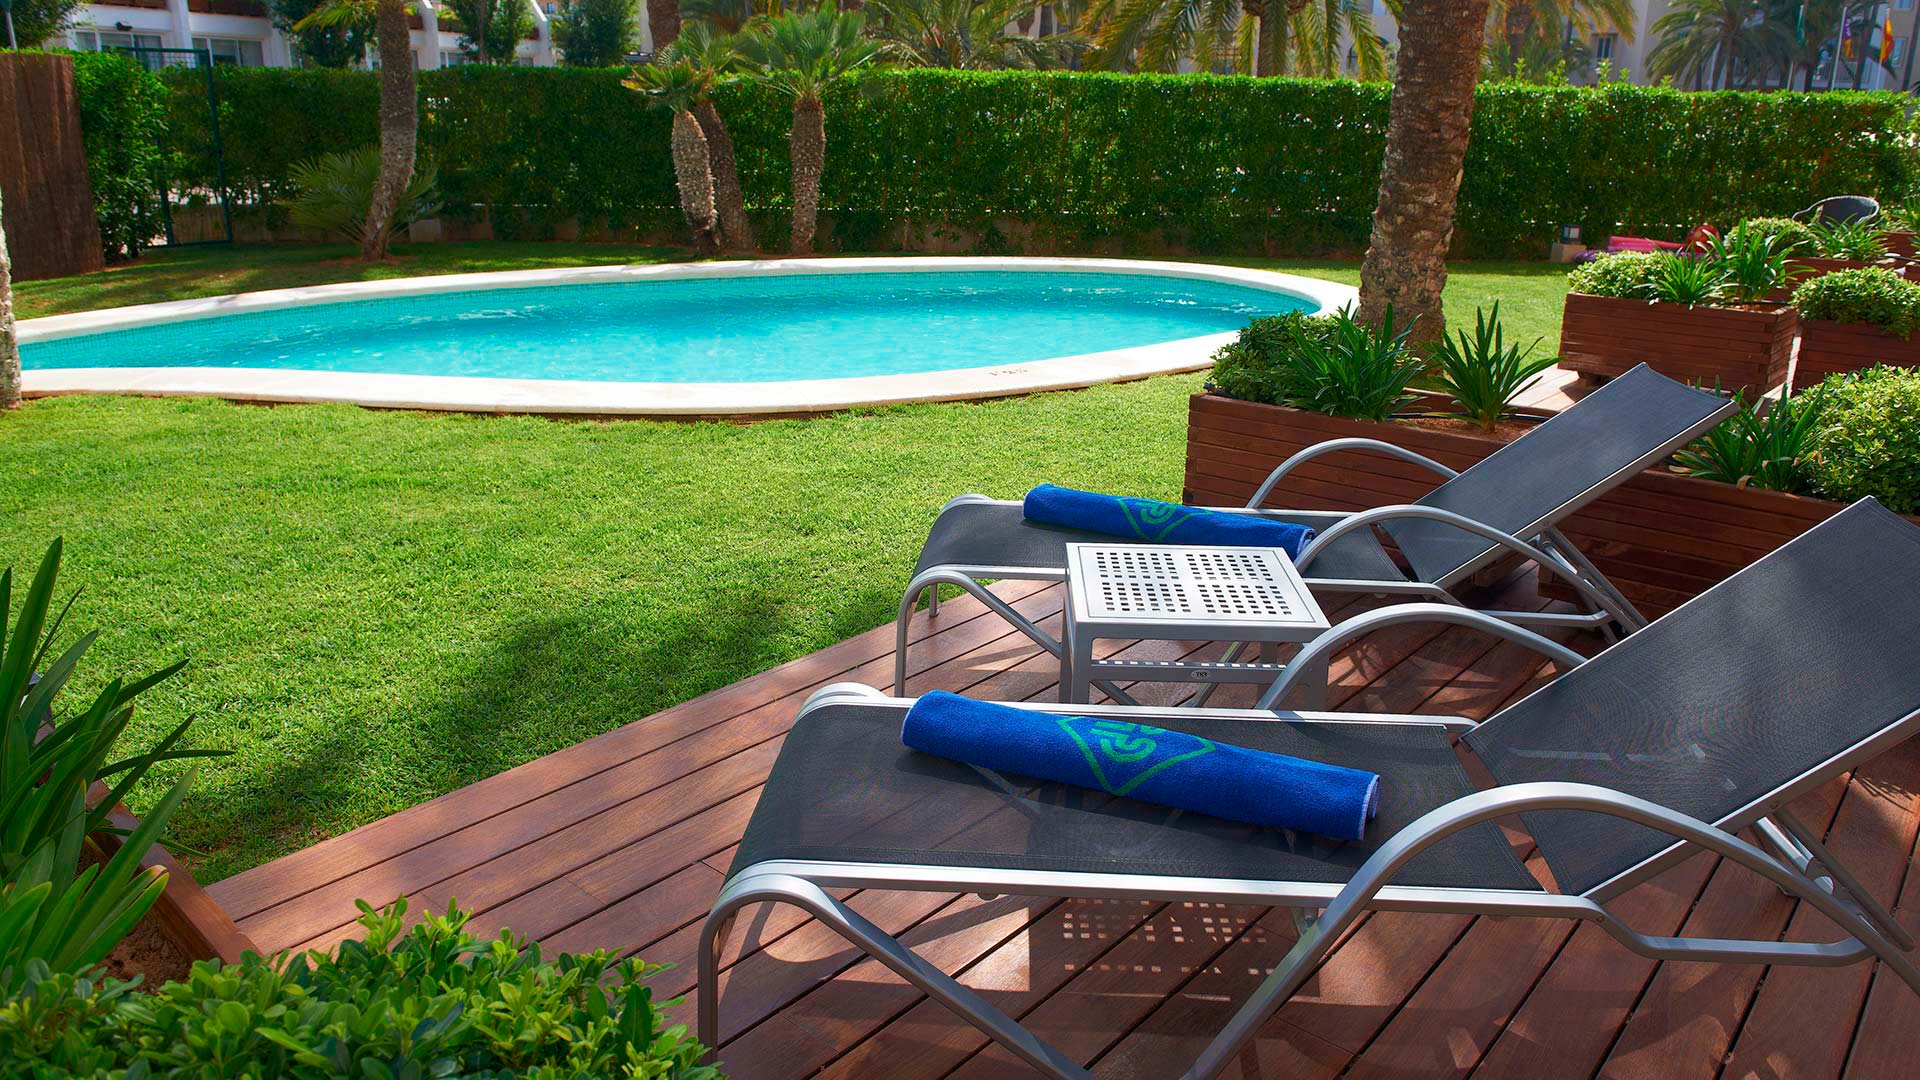 Chambres doubles Select extérieures avec piscine semi-privée et terrasse de jardin.